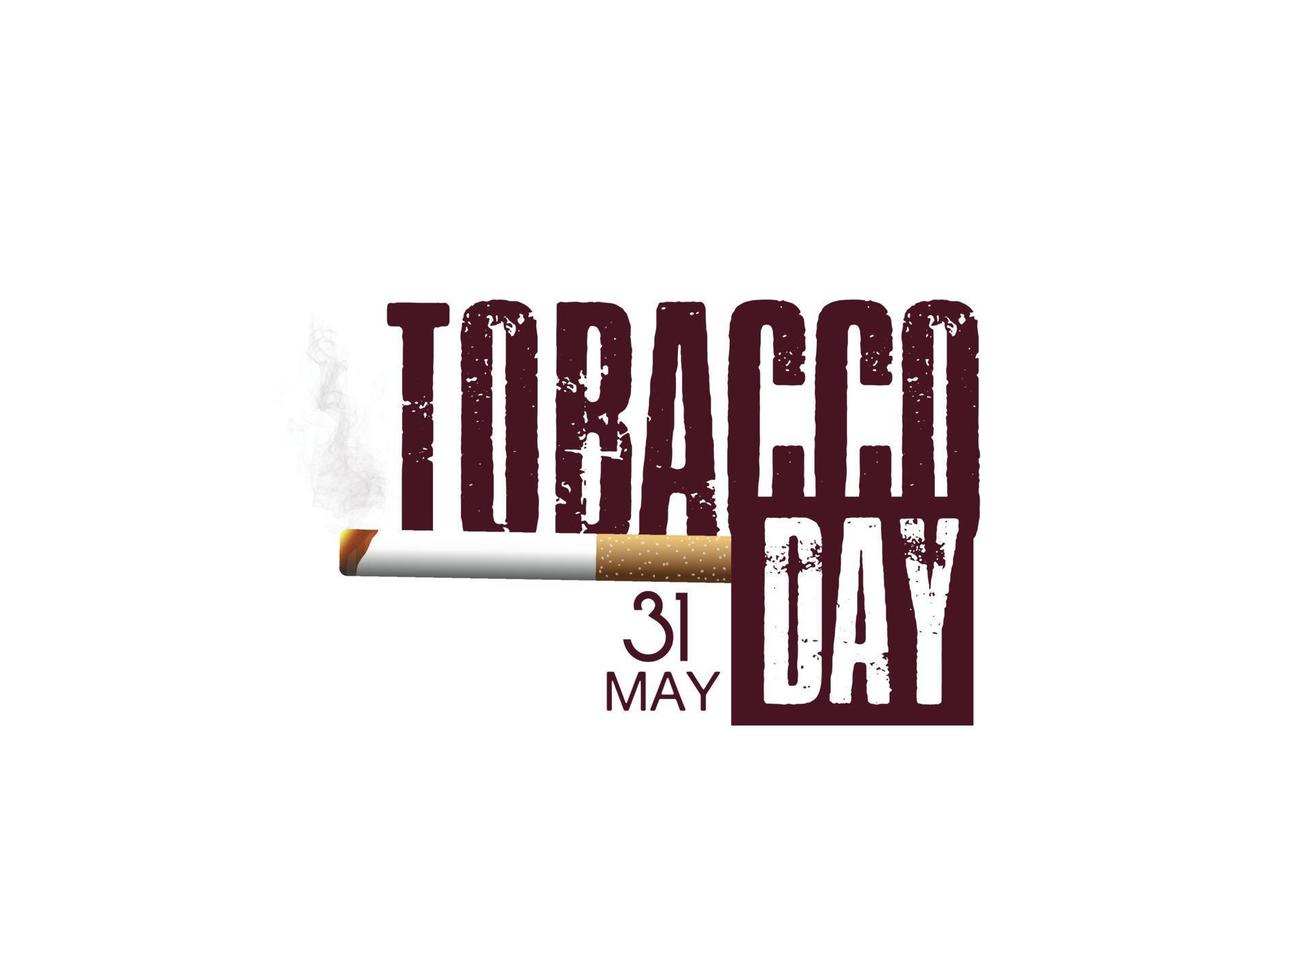 concepto de ilustración vectorial de no fumar y día mundial sin tabaco vector